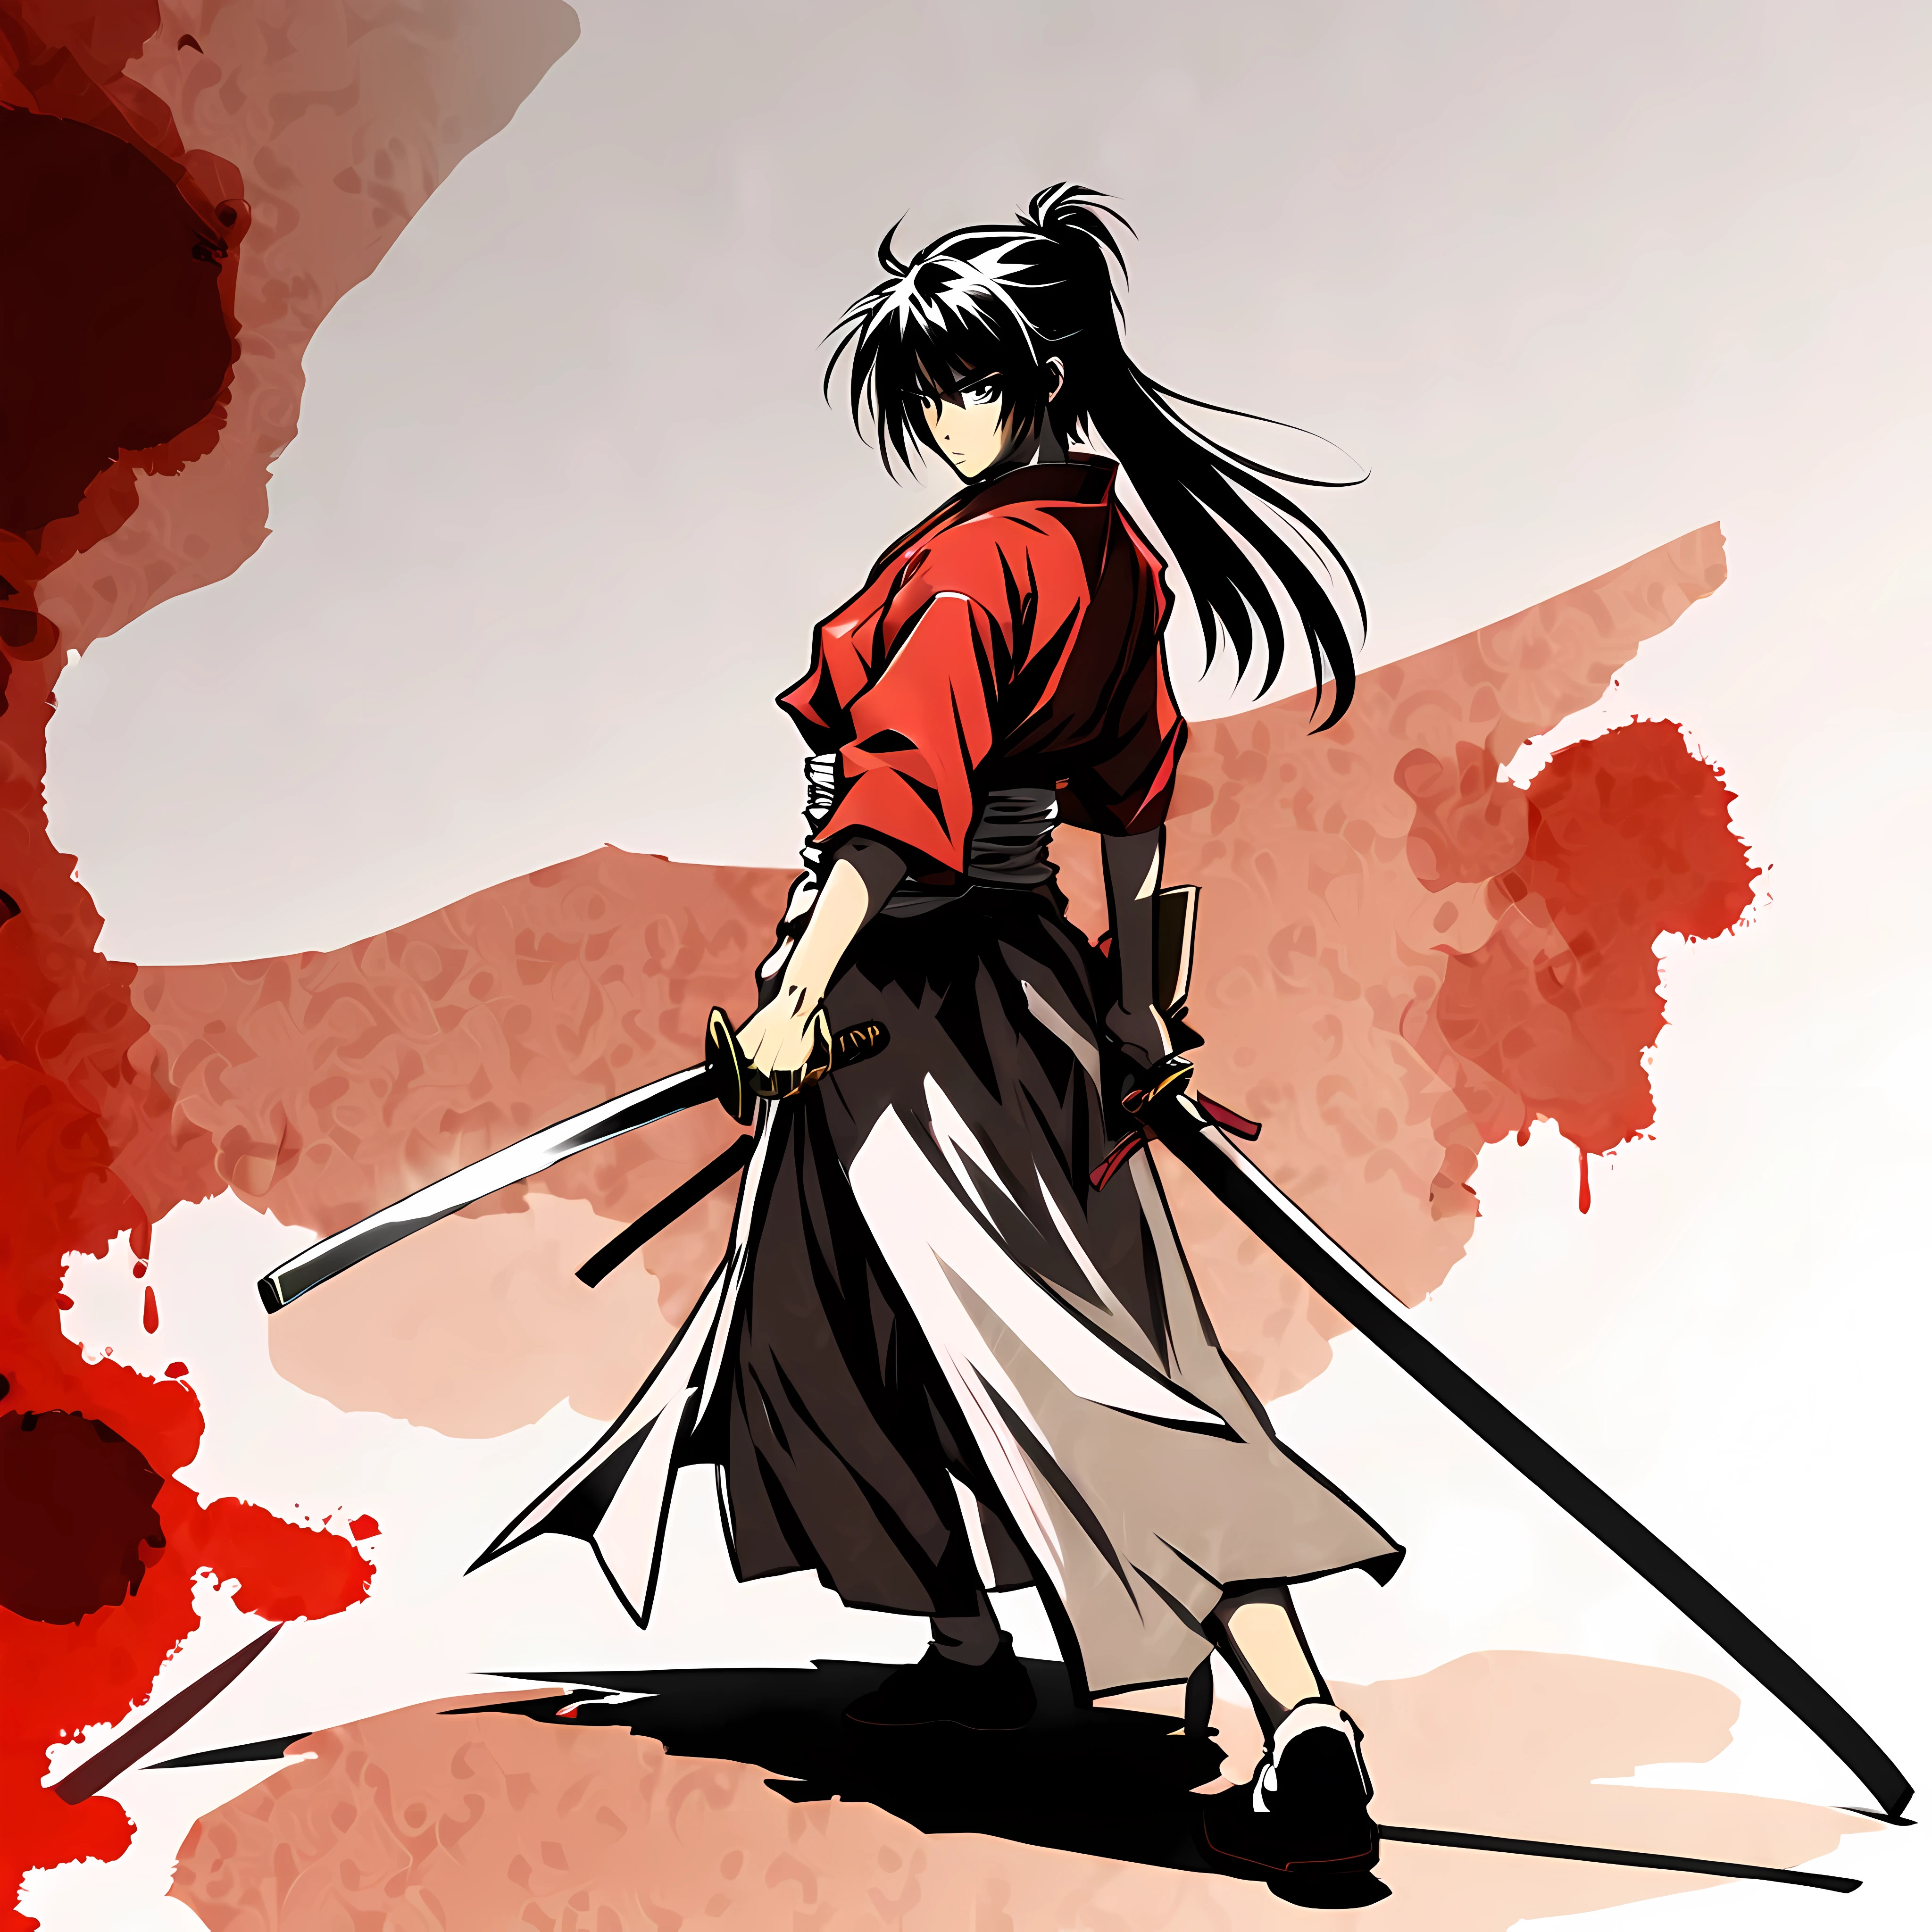 ((อนิเมะสไตล์ Rurouni Kenshin:1.3). ((รุนแรง_การแสดงออก:1.2), ((ซามูไรหญิง):1.2), ((นาฬิกาทราย_รูป):1.1). ((ท่าทางการต่อสู้):1.1), | The รูป is depicted with smooth lines, แสดงอารมณ์และท่าทางผ่านความคมชัดของความหนาแน่นของหมึก. พื้นหลังมีความเรียบง่าย, เน้นแสง, เงา, และการรับรู้เชิงพื้นที่.